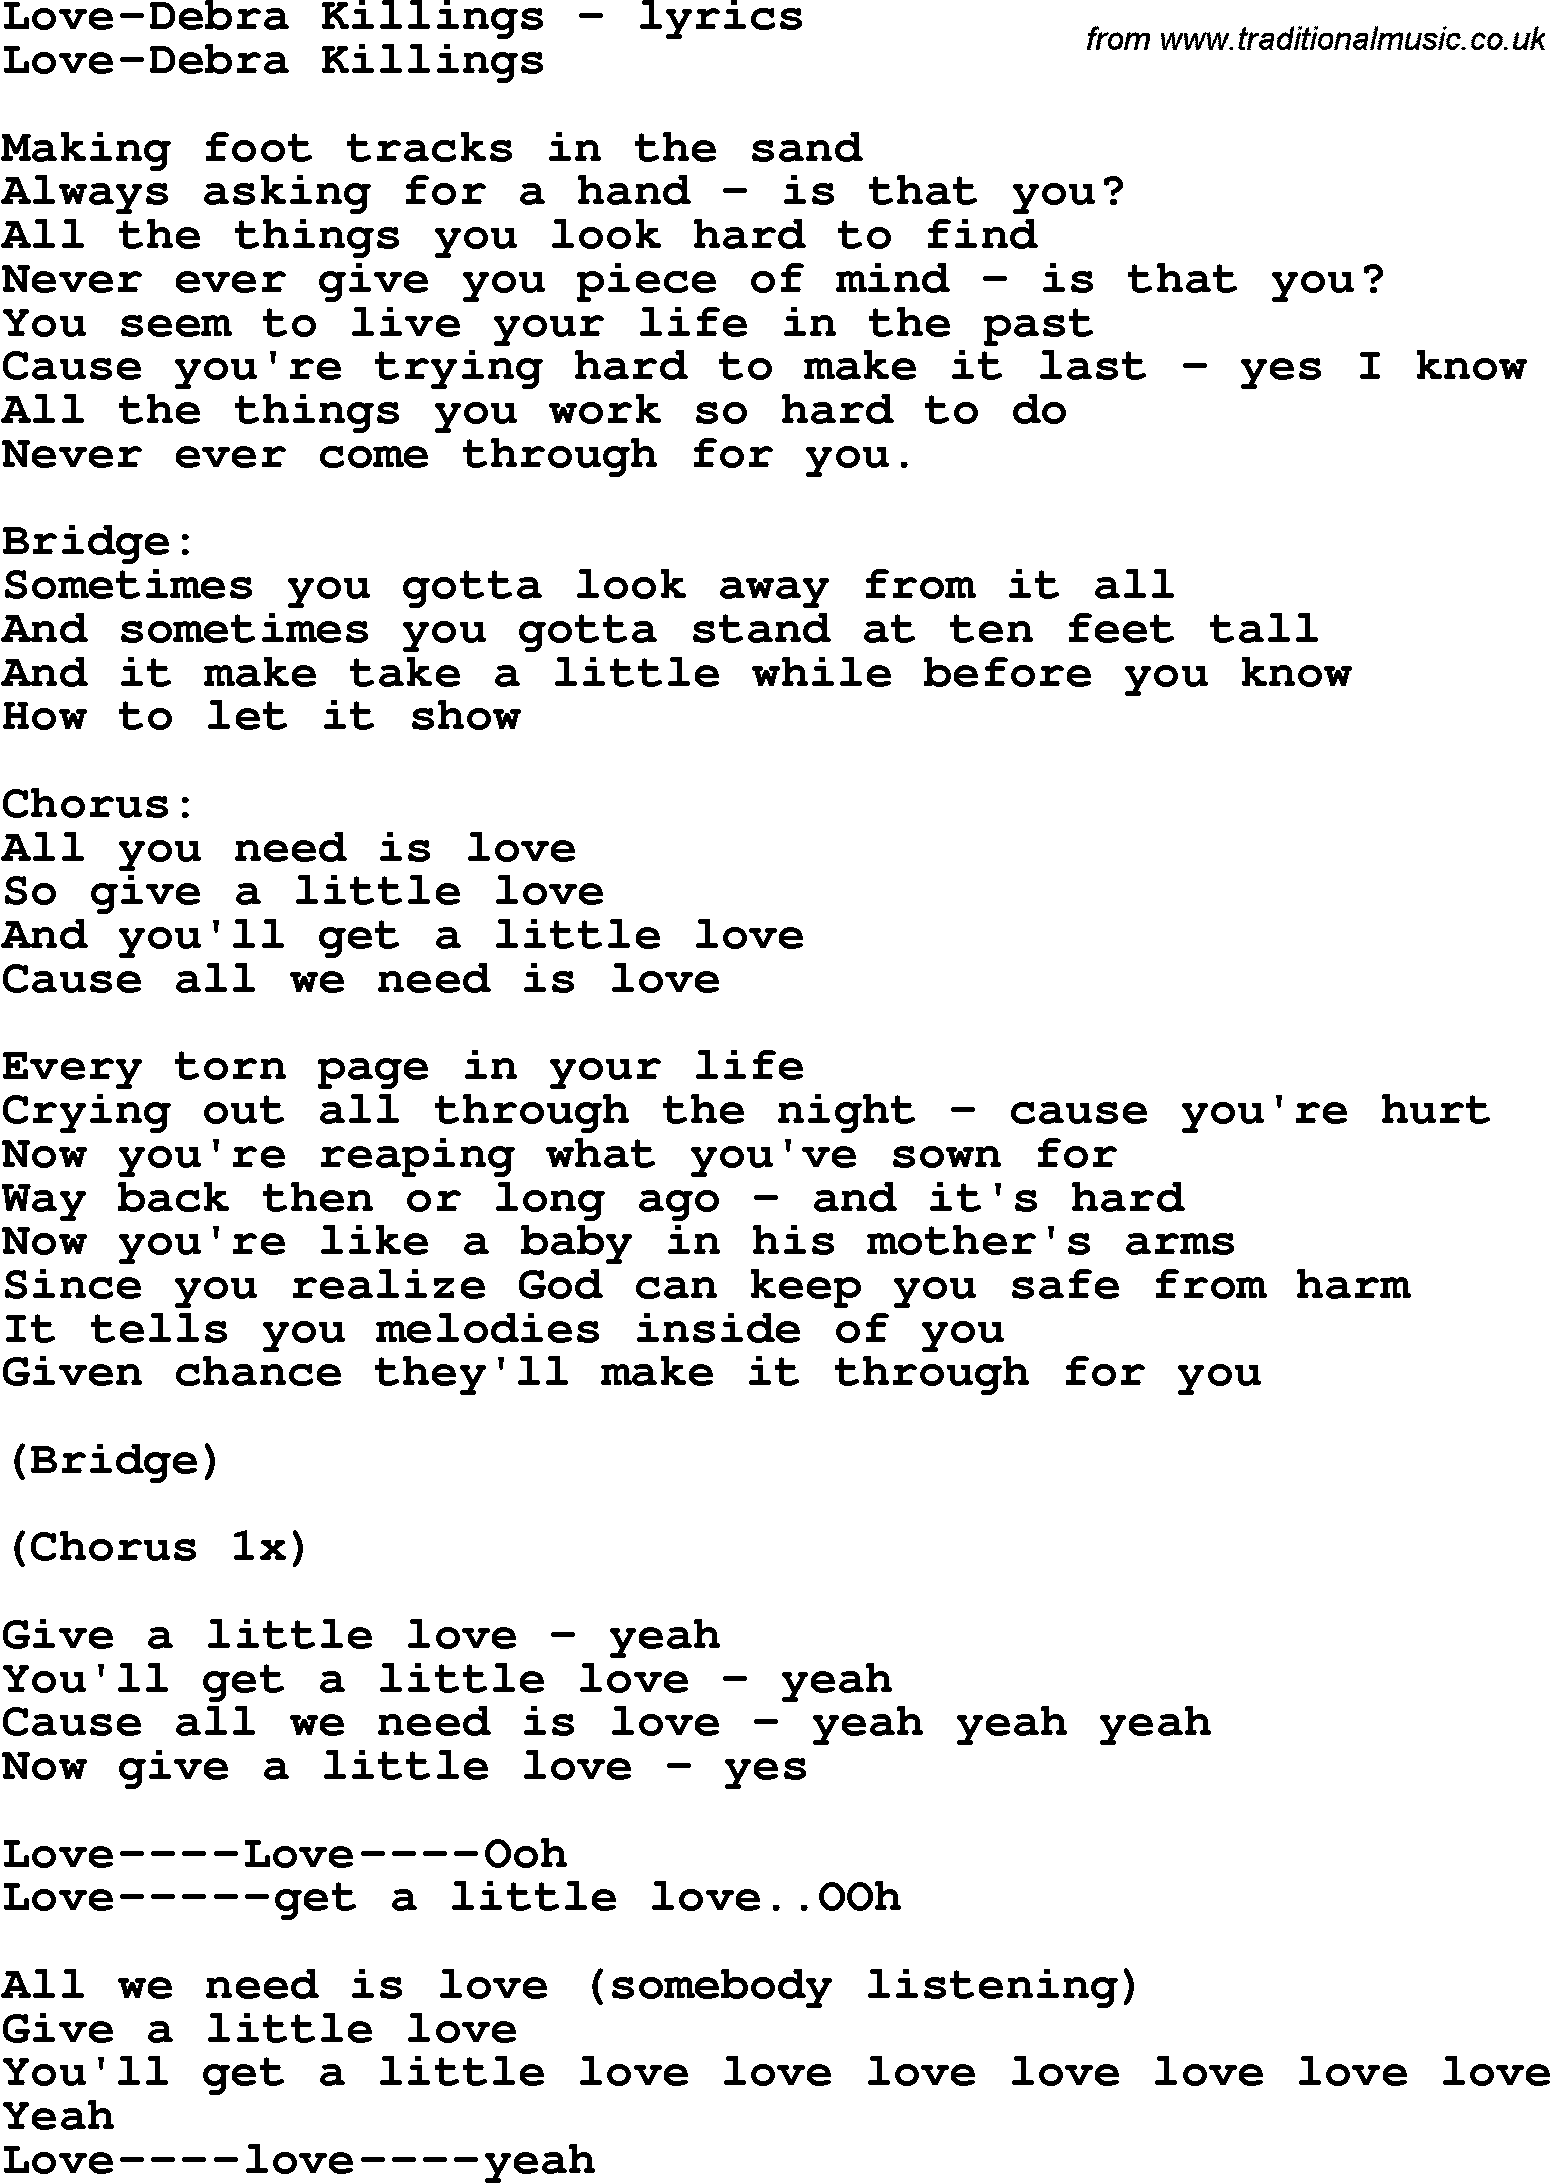 Love Song Lyrics for: Love-Debra Killings